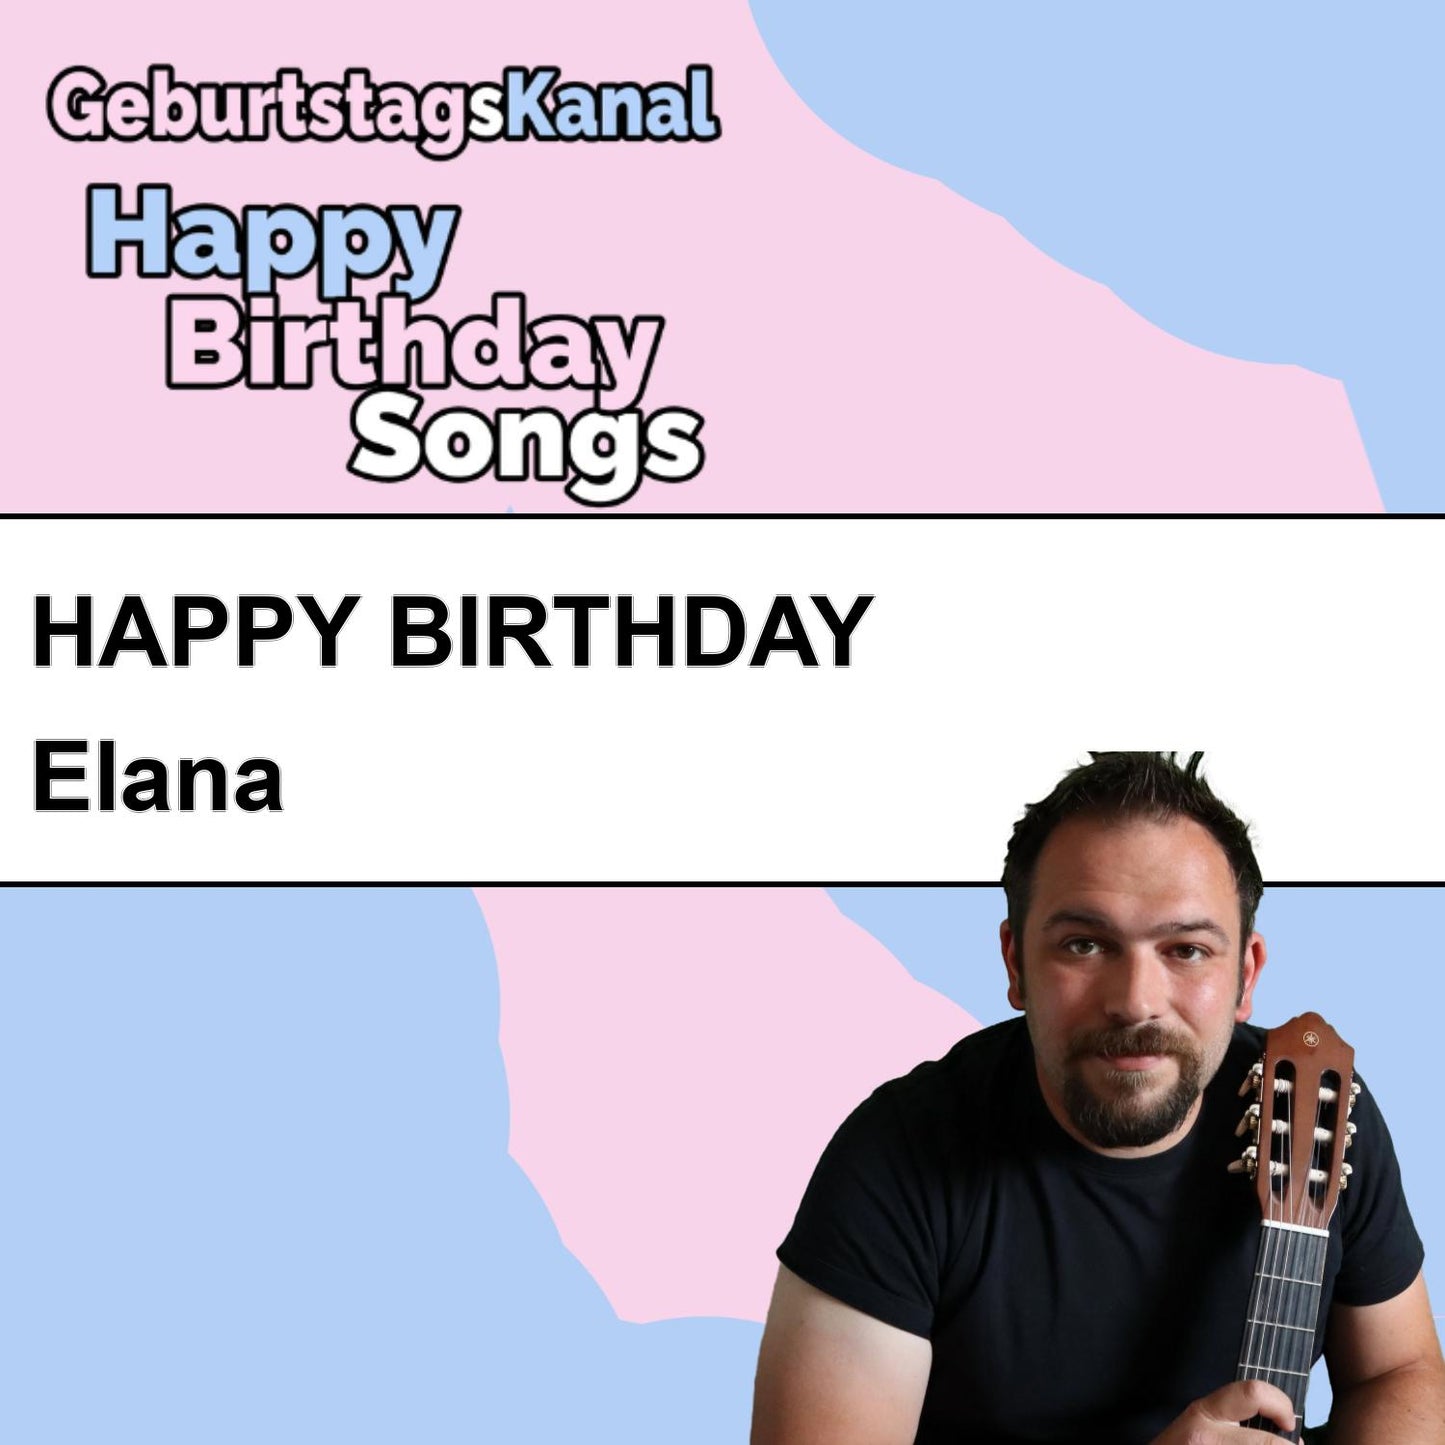 Produktbild Happy Birthday to you Elana mit Wunschgrußbotschaft